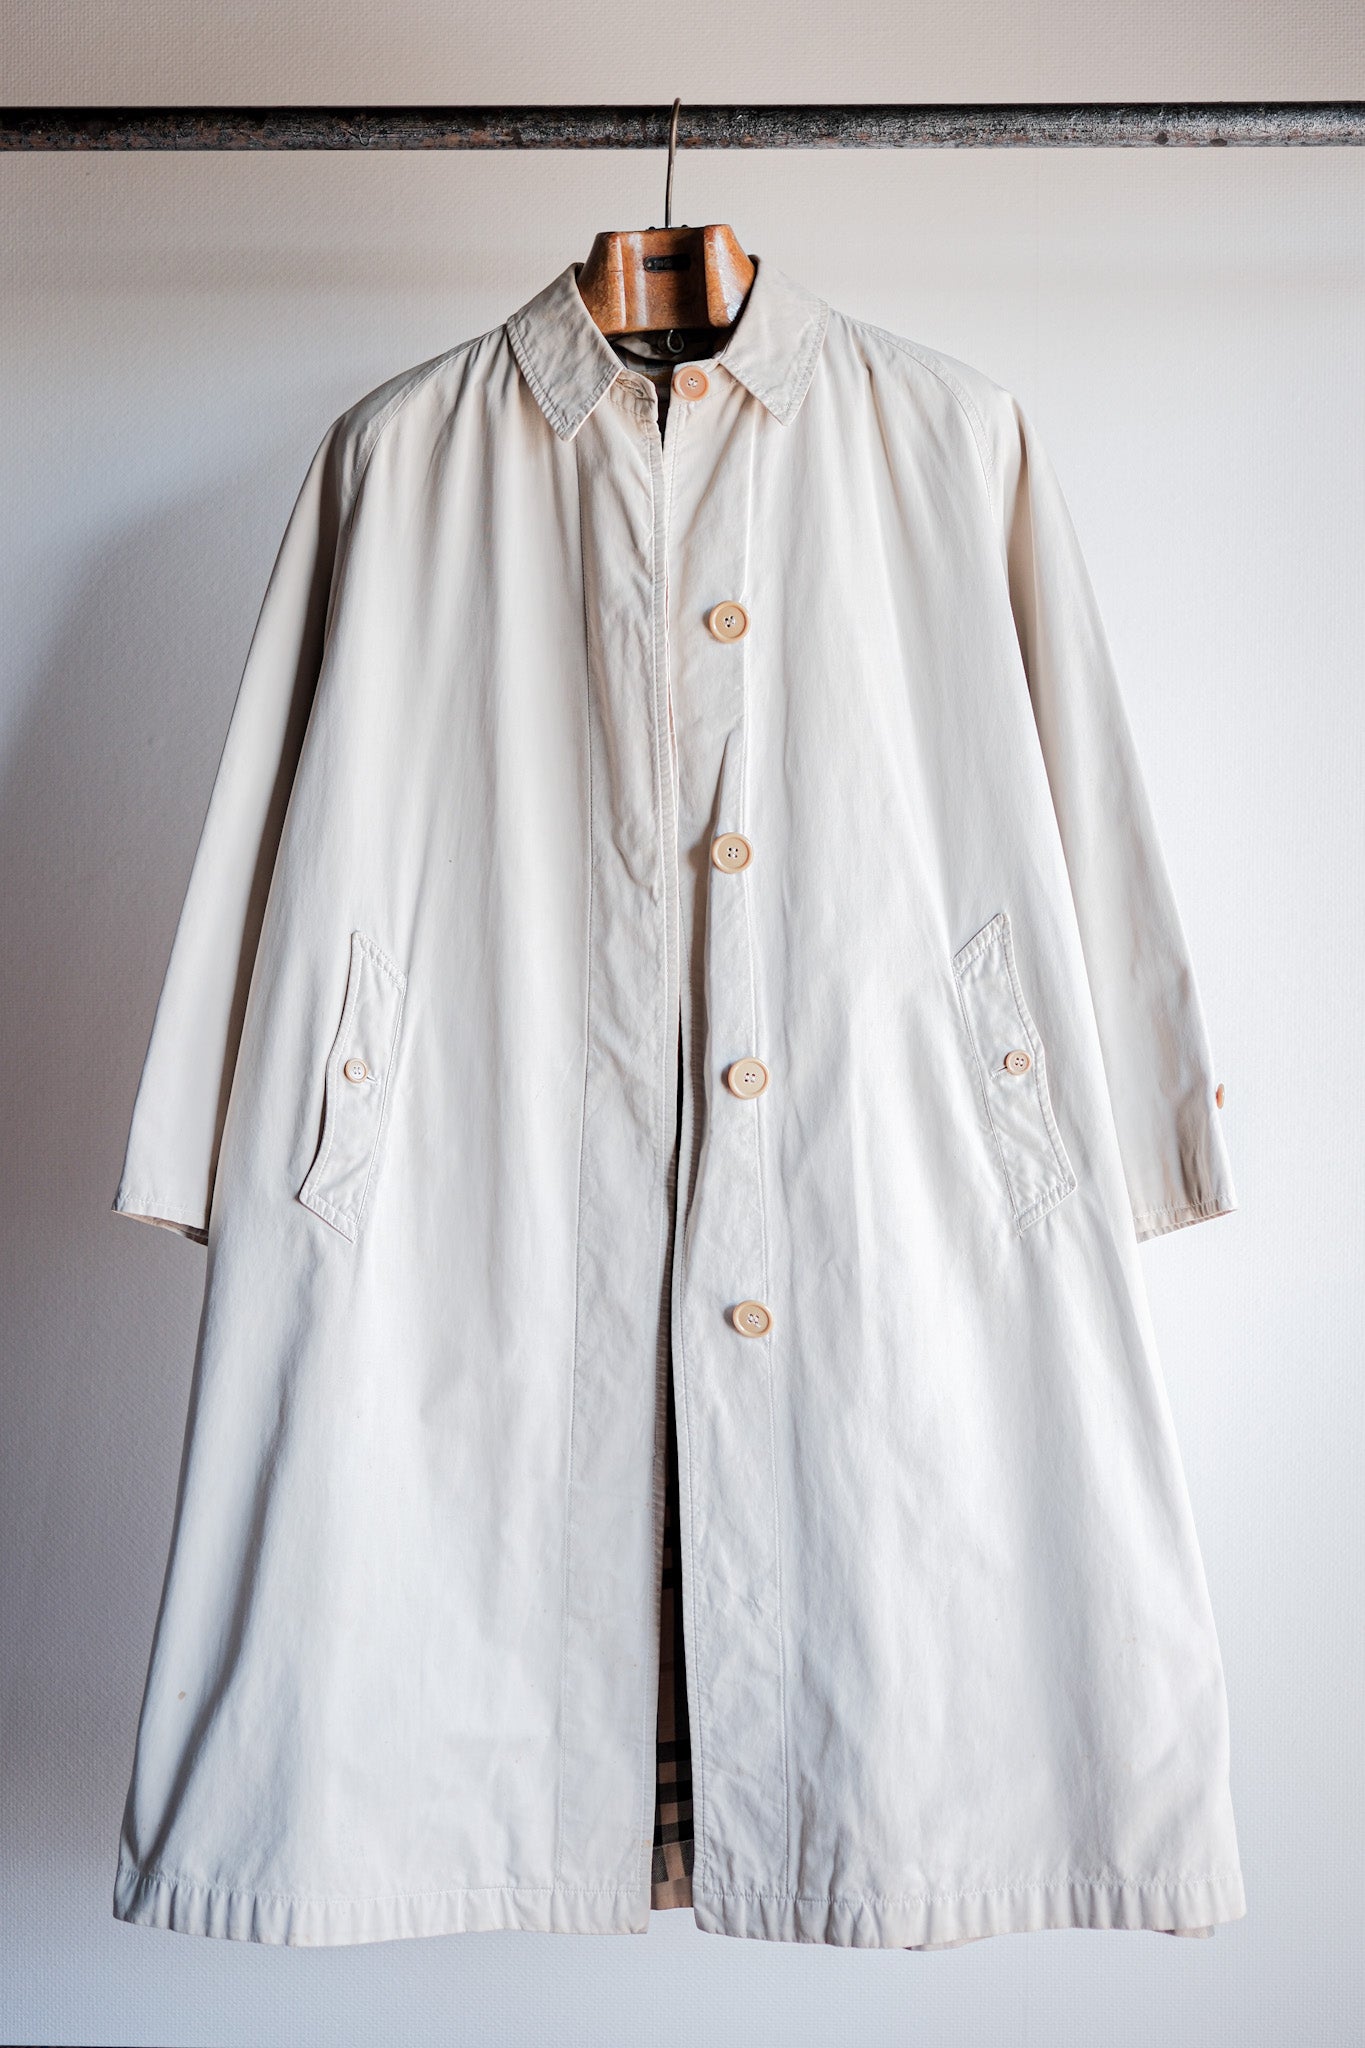 【~50's】Vintage Burberrys Single Raglan Balmacaan Coat C100 for Ladies "Made in France"